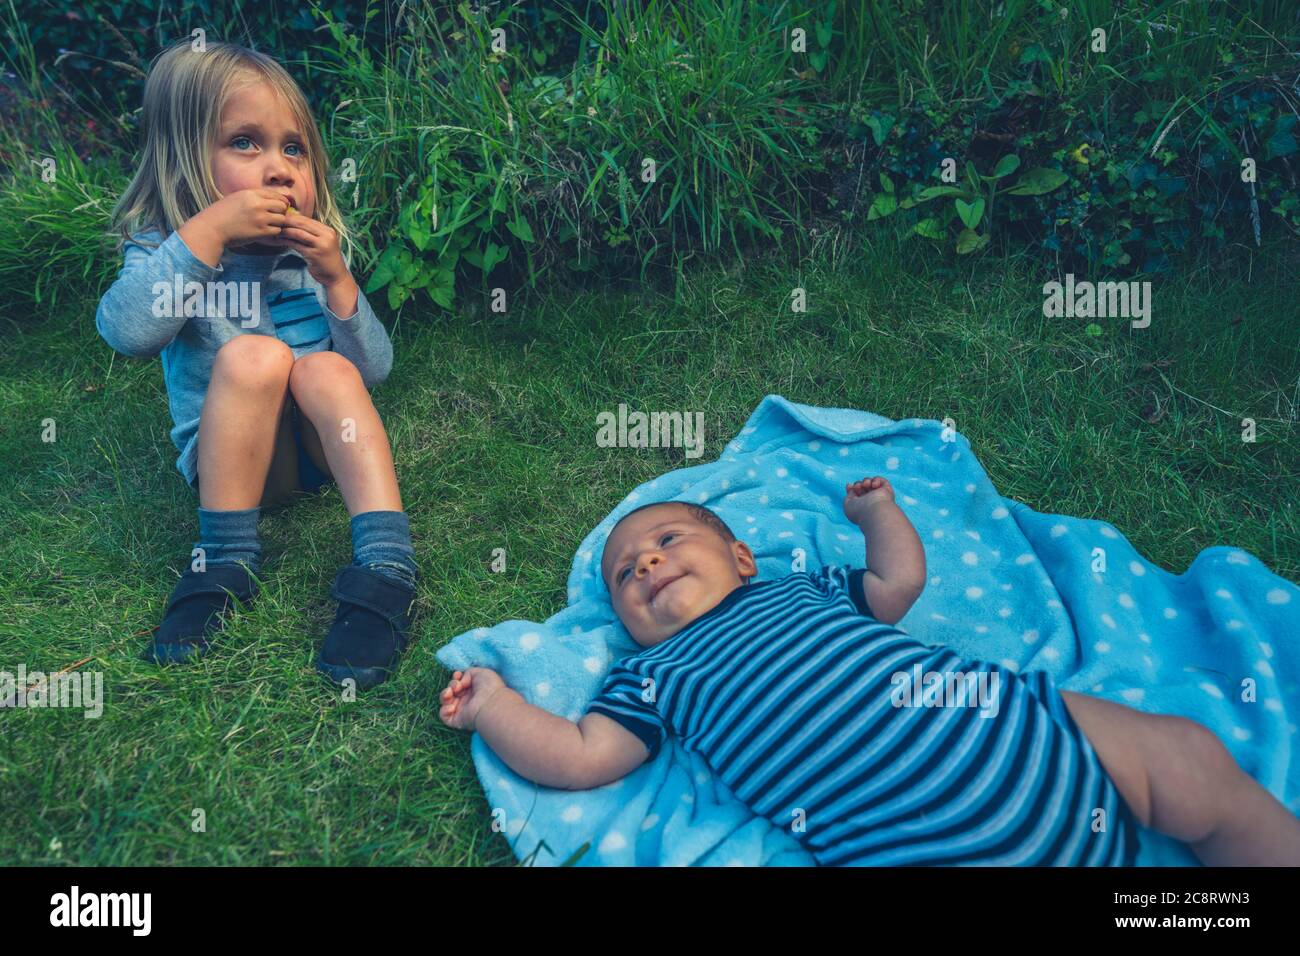 Un enfant de la chambre est assis sur la pelouse avec sa petite sœur Banque D'Images